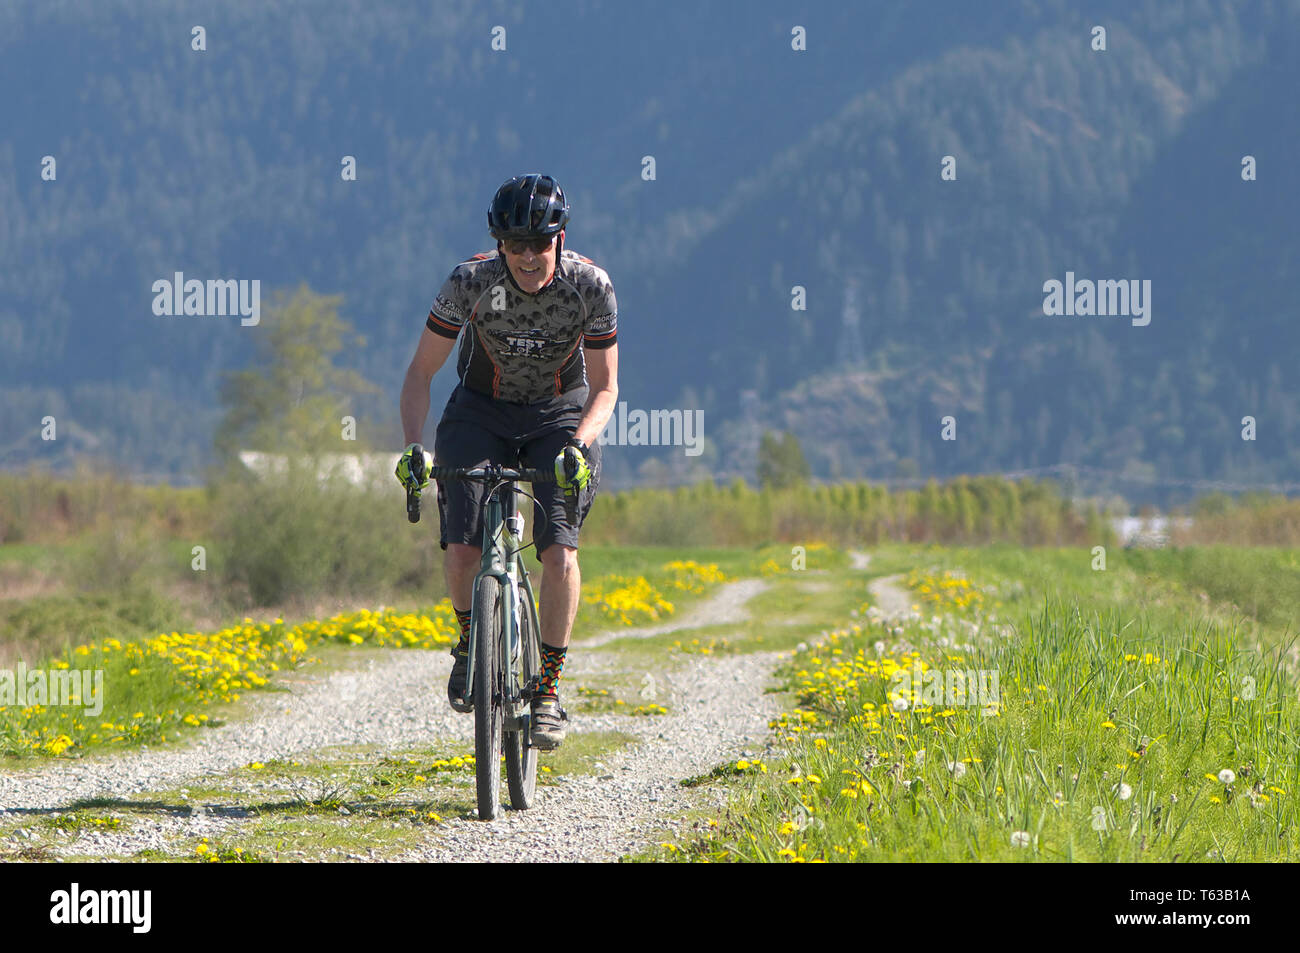 28 avril 2019, le Rock Ridge Volume 1 compétition cycliste à Maple Ridge, en Colombie-Britannique, Canada. Circonscription cycliste le long d'une digue de gravier. Banque D'Images